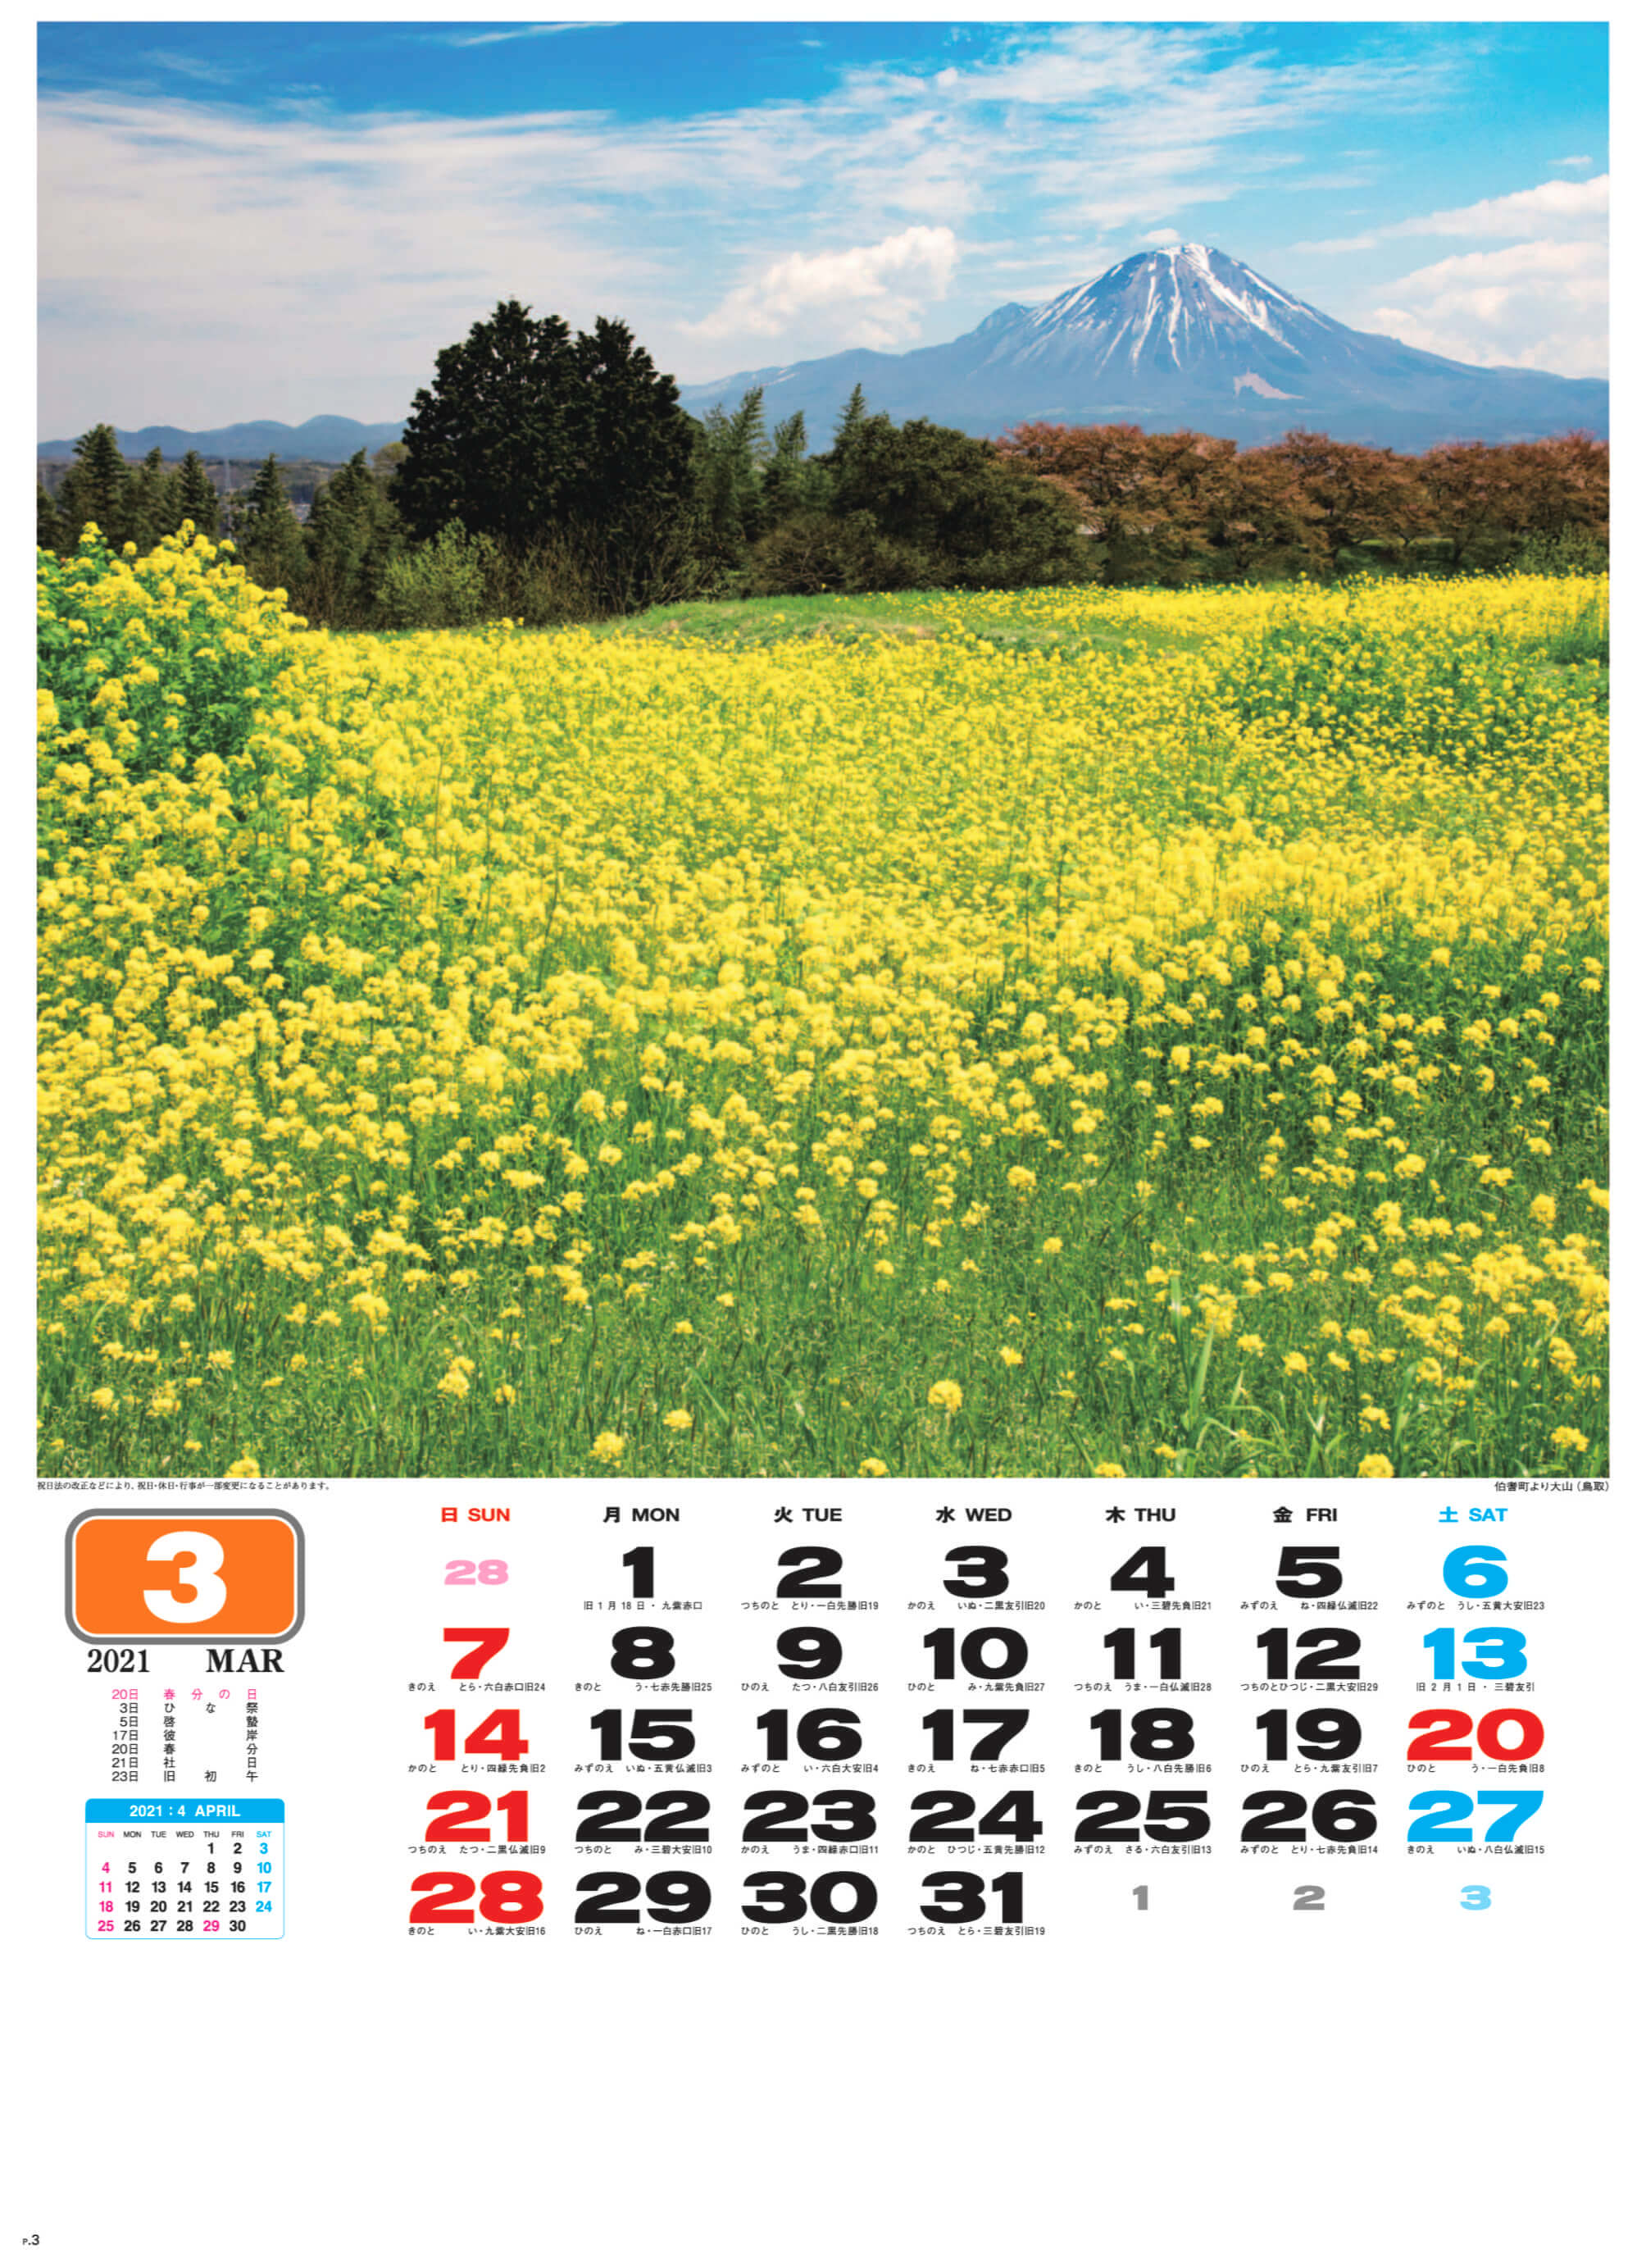 伯耆町より大山(鳥取) 美しき日本 2021年カレンダーの画像